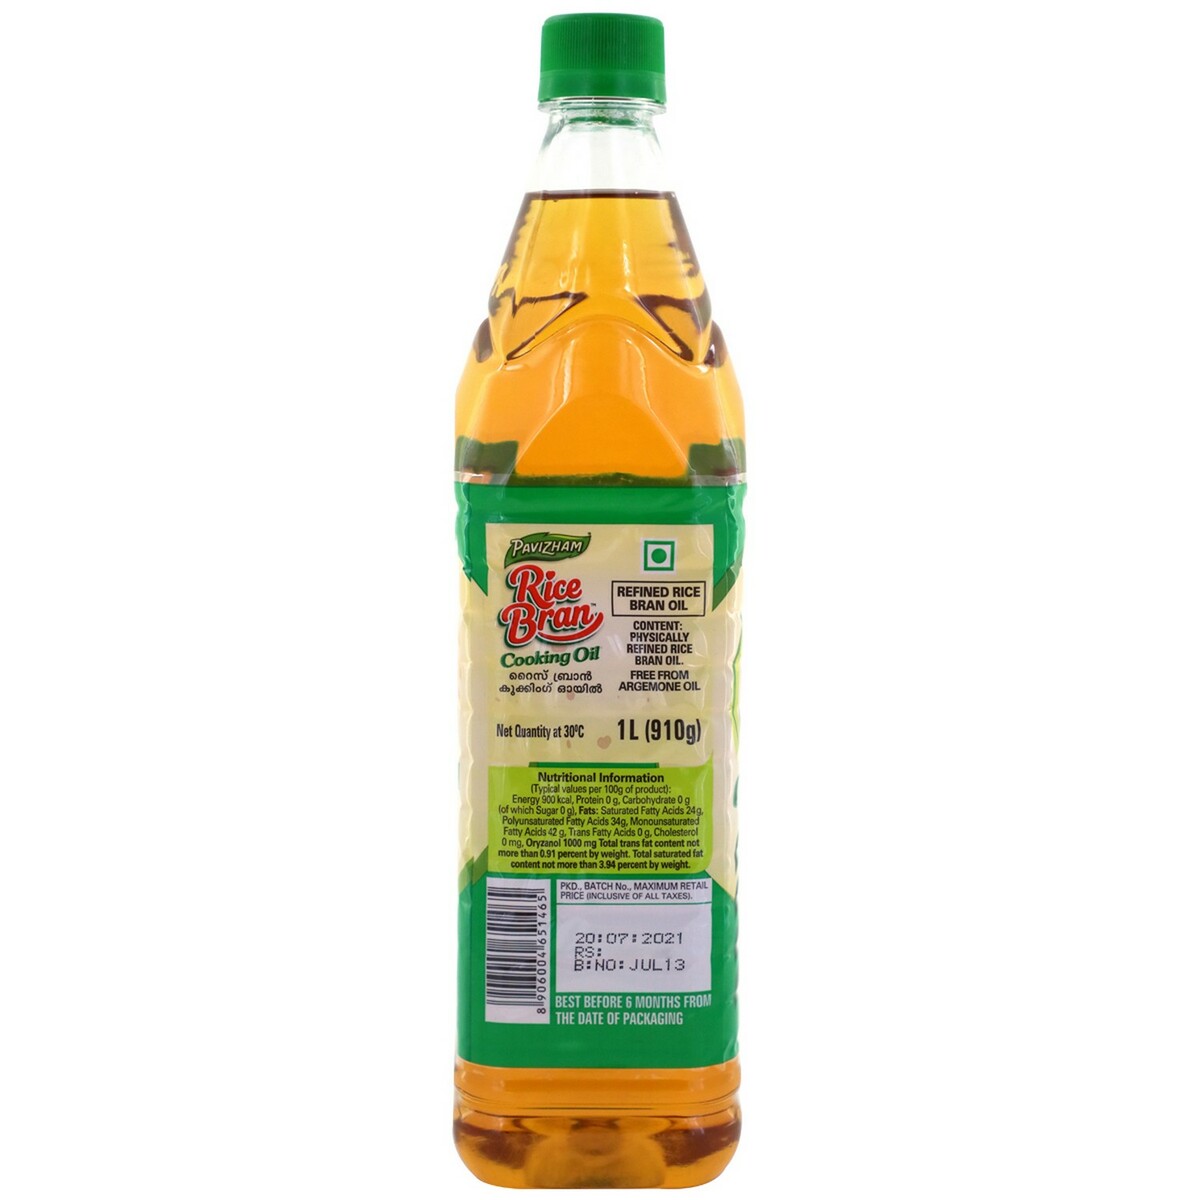 Pavizham Rice Bran Oil 1 litre bottle